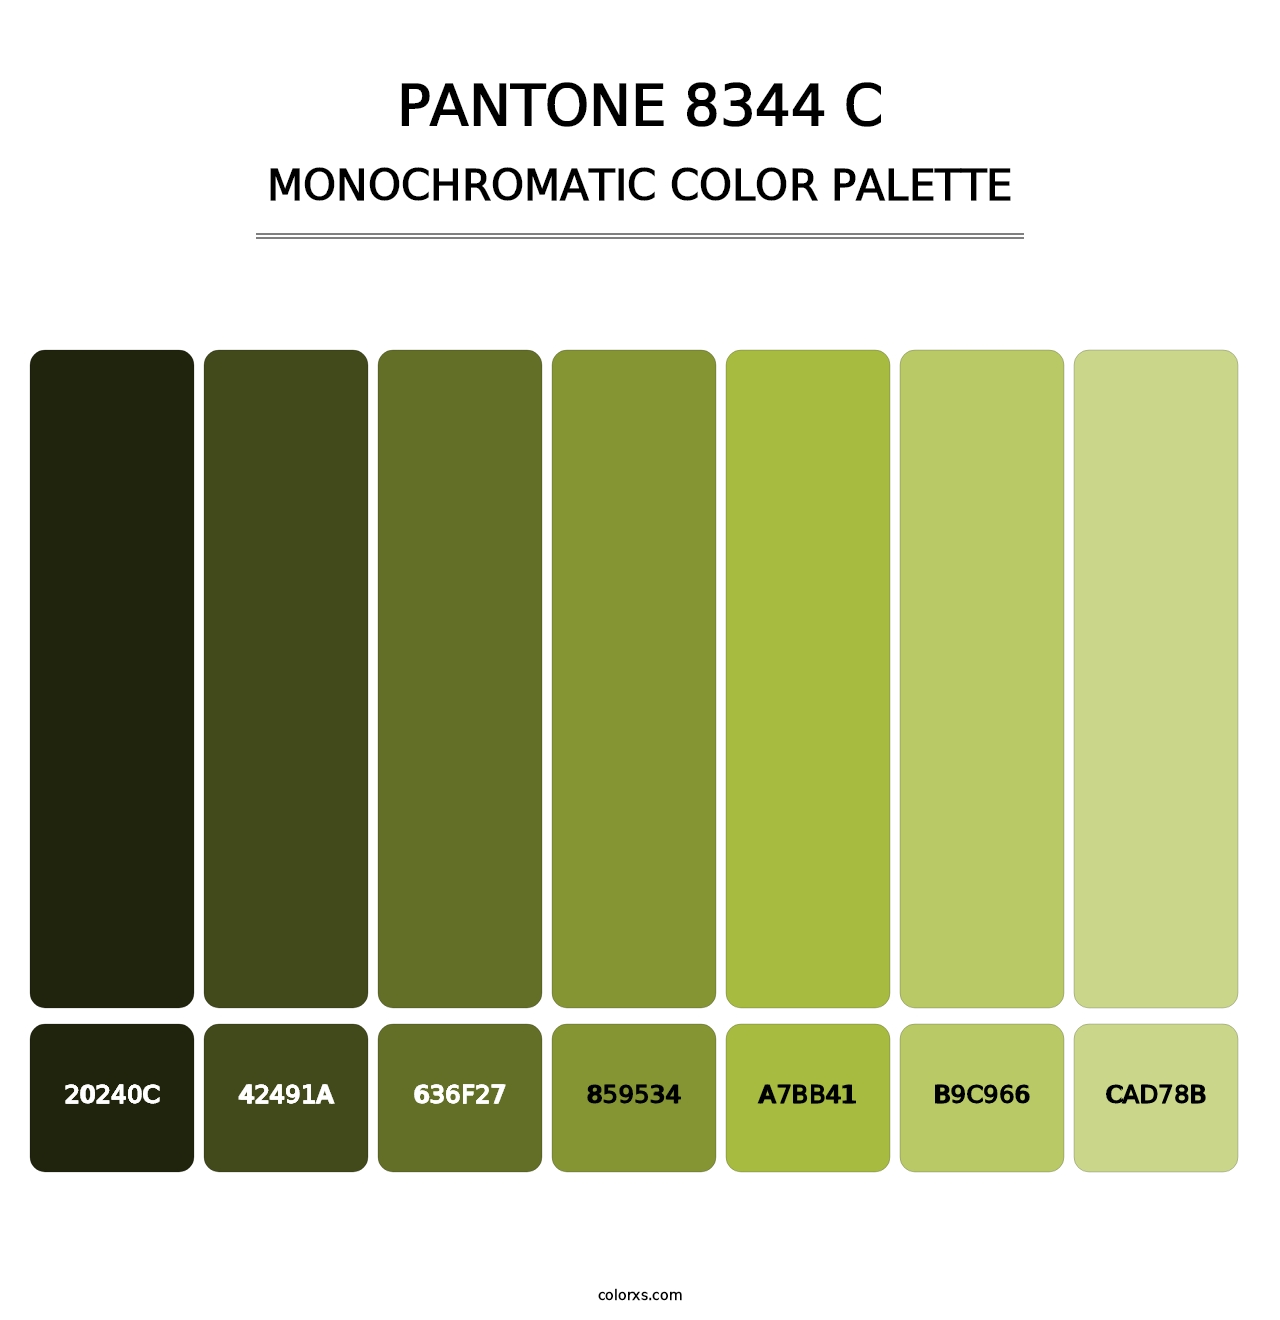 PANTONE 8344 C - Monochromatic Color Palette